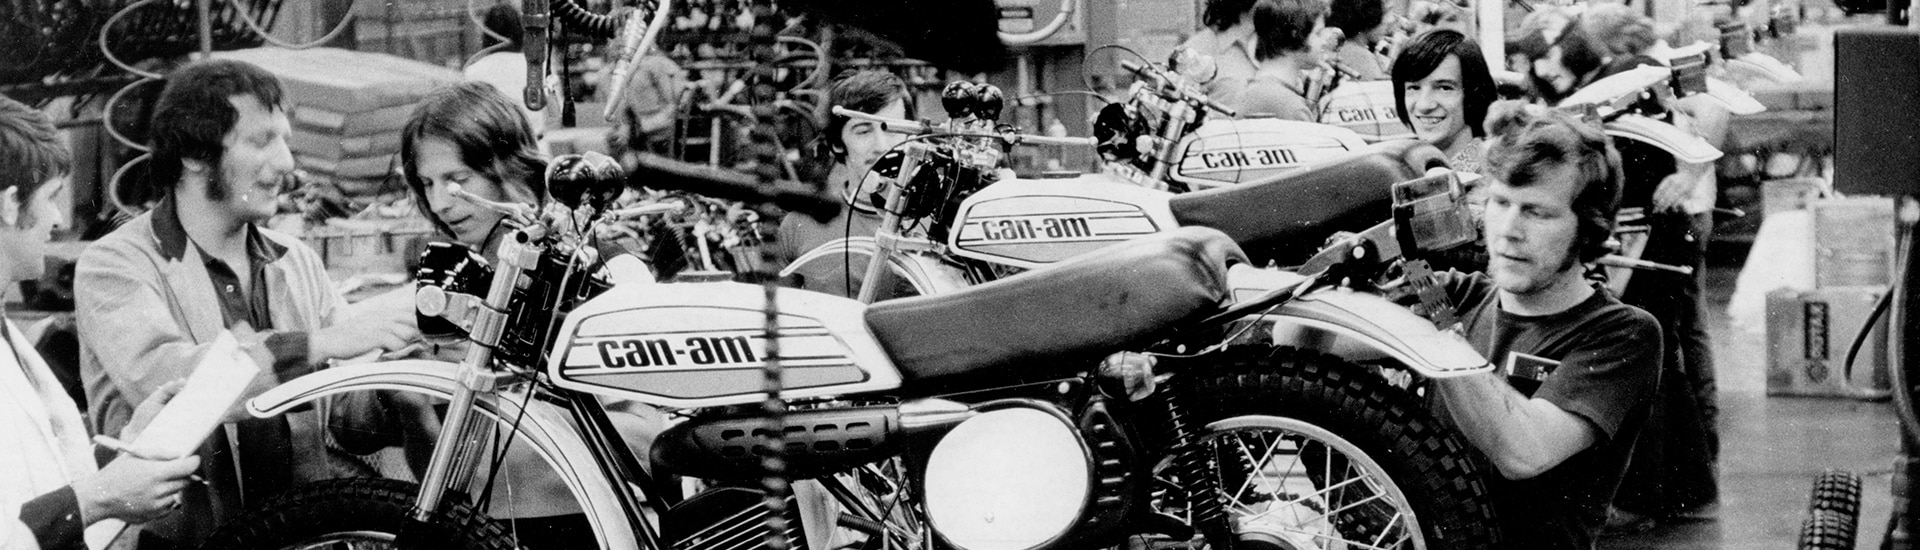 Motocicletas Can-Am revisadas después de la producción